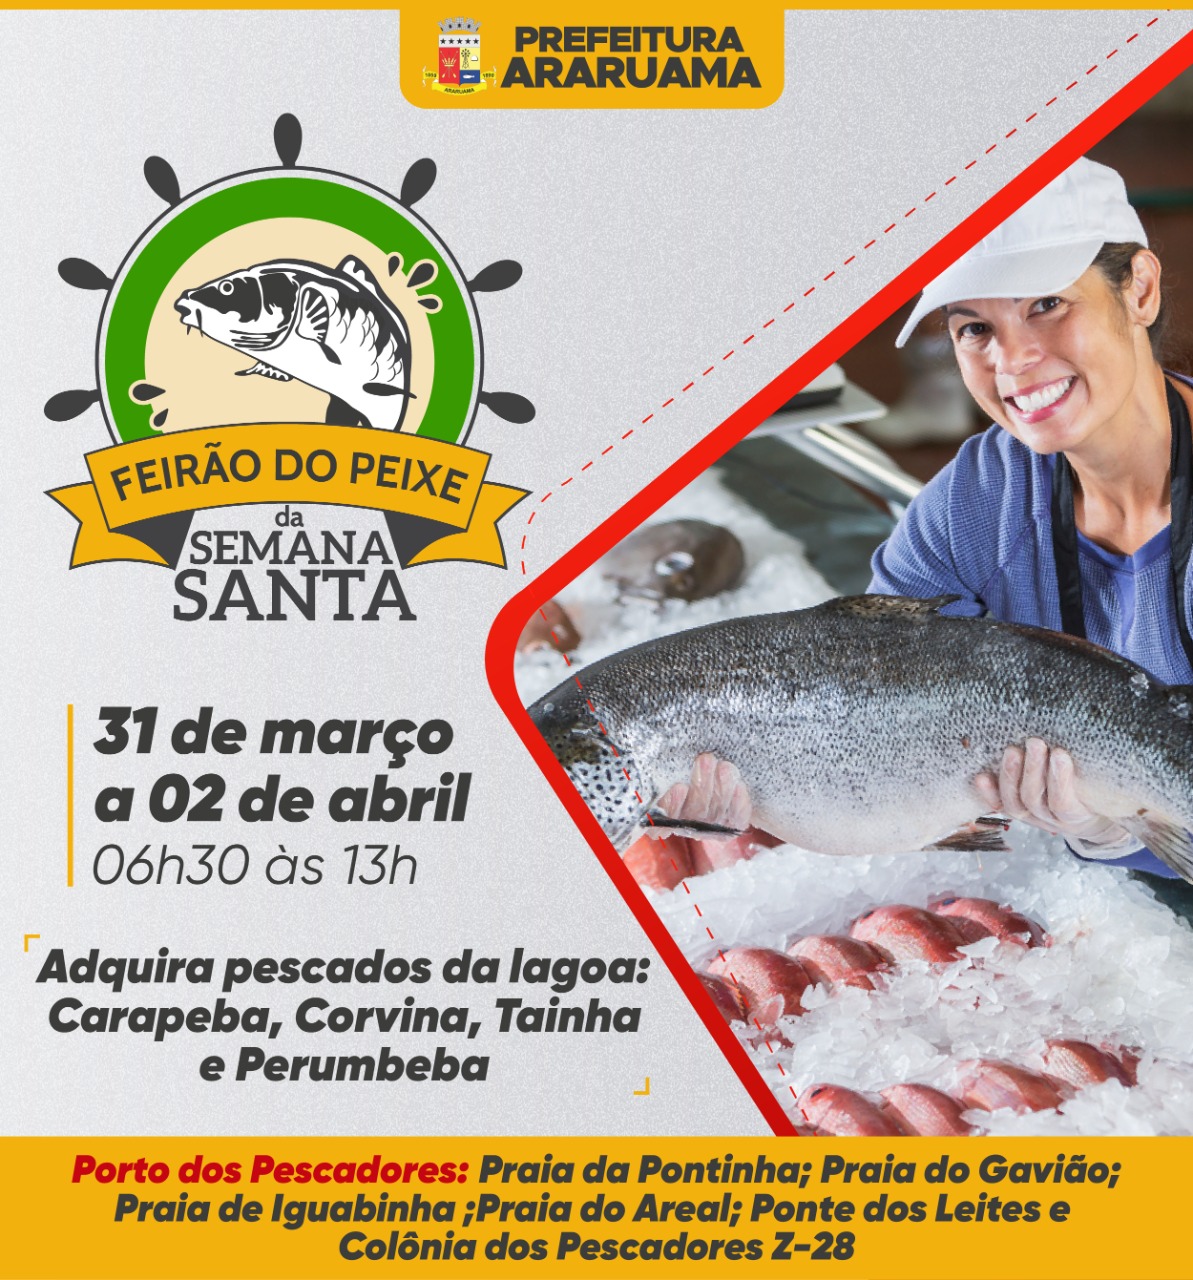 Prefeitura vai realizar a quinta edição do projeto “Feirão do Peixe da Semana Santa